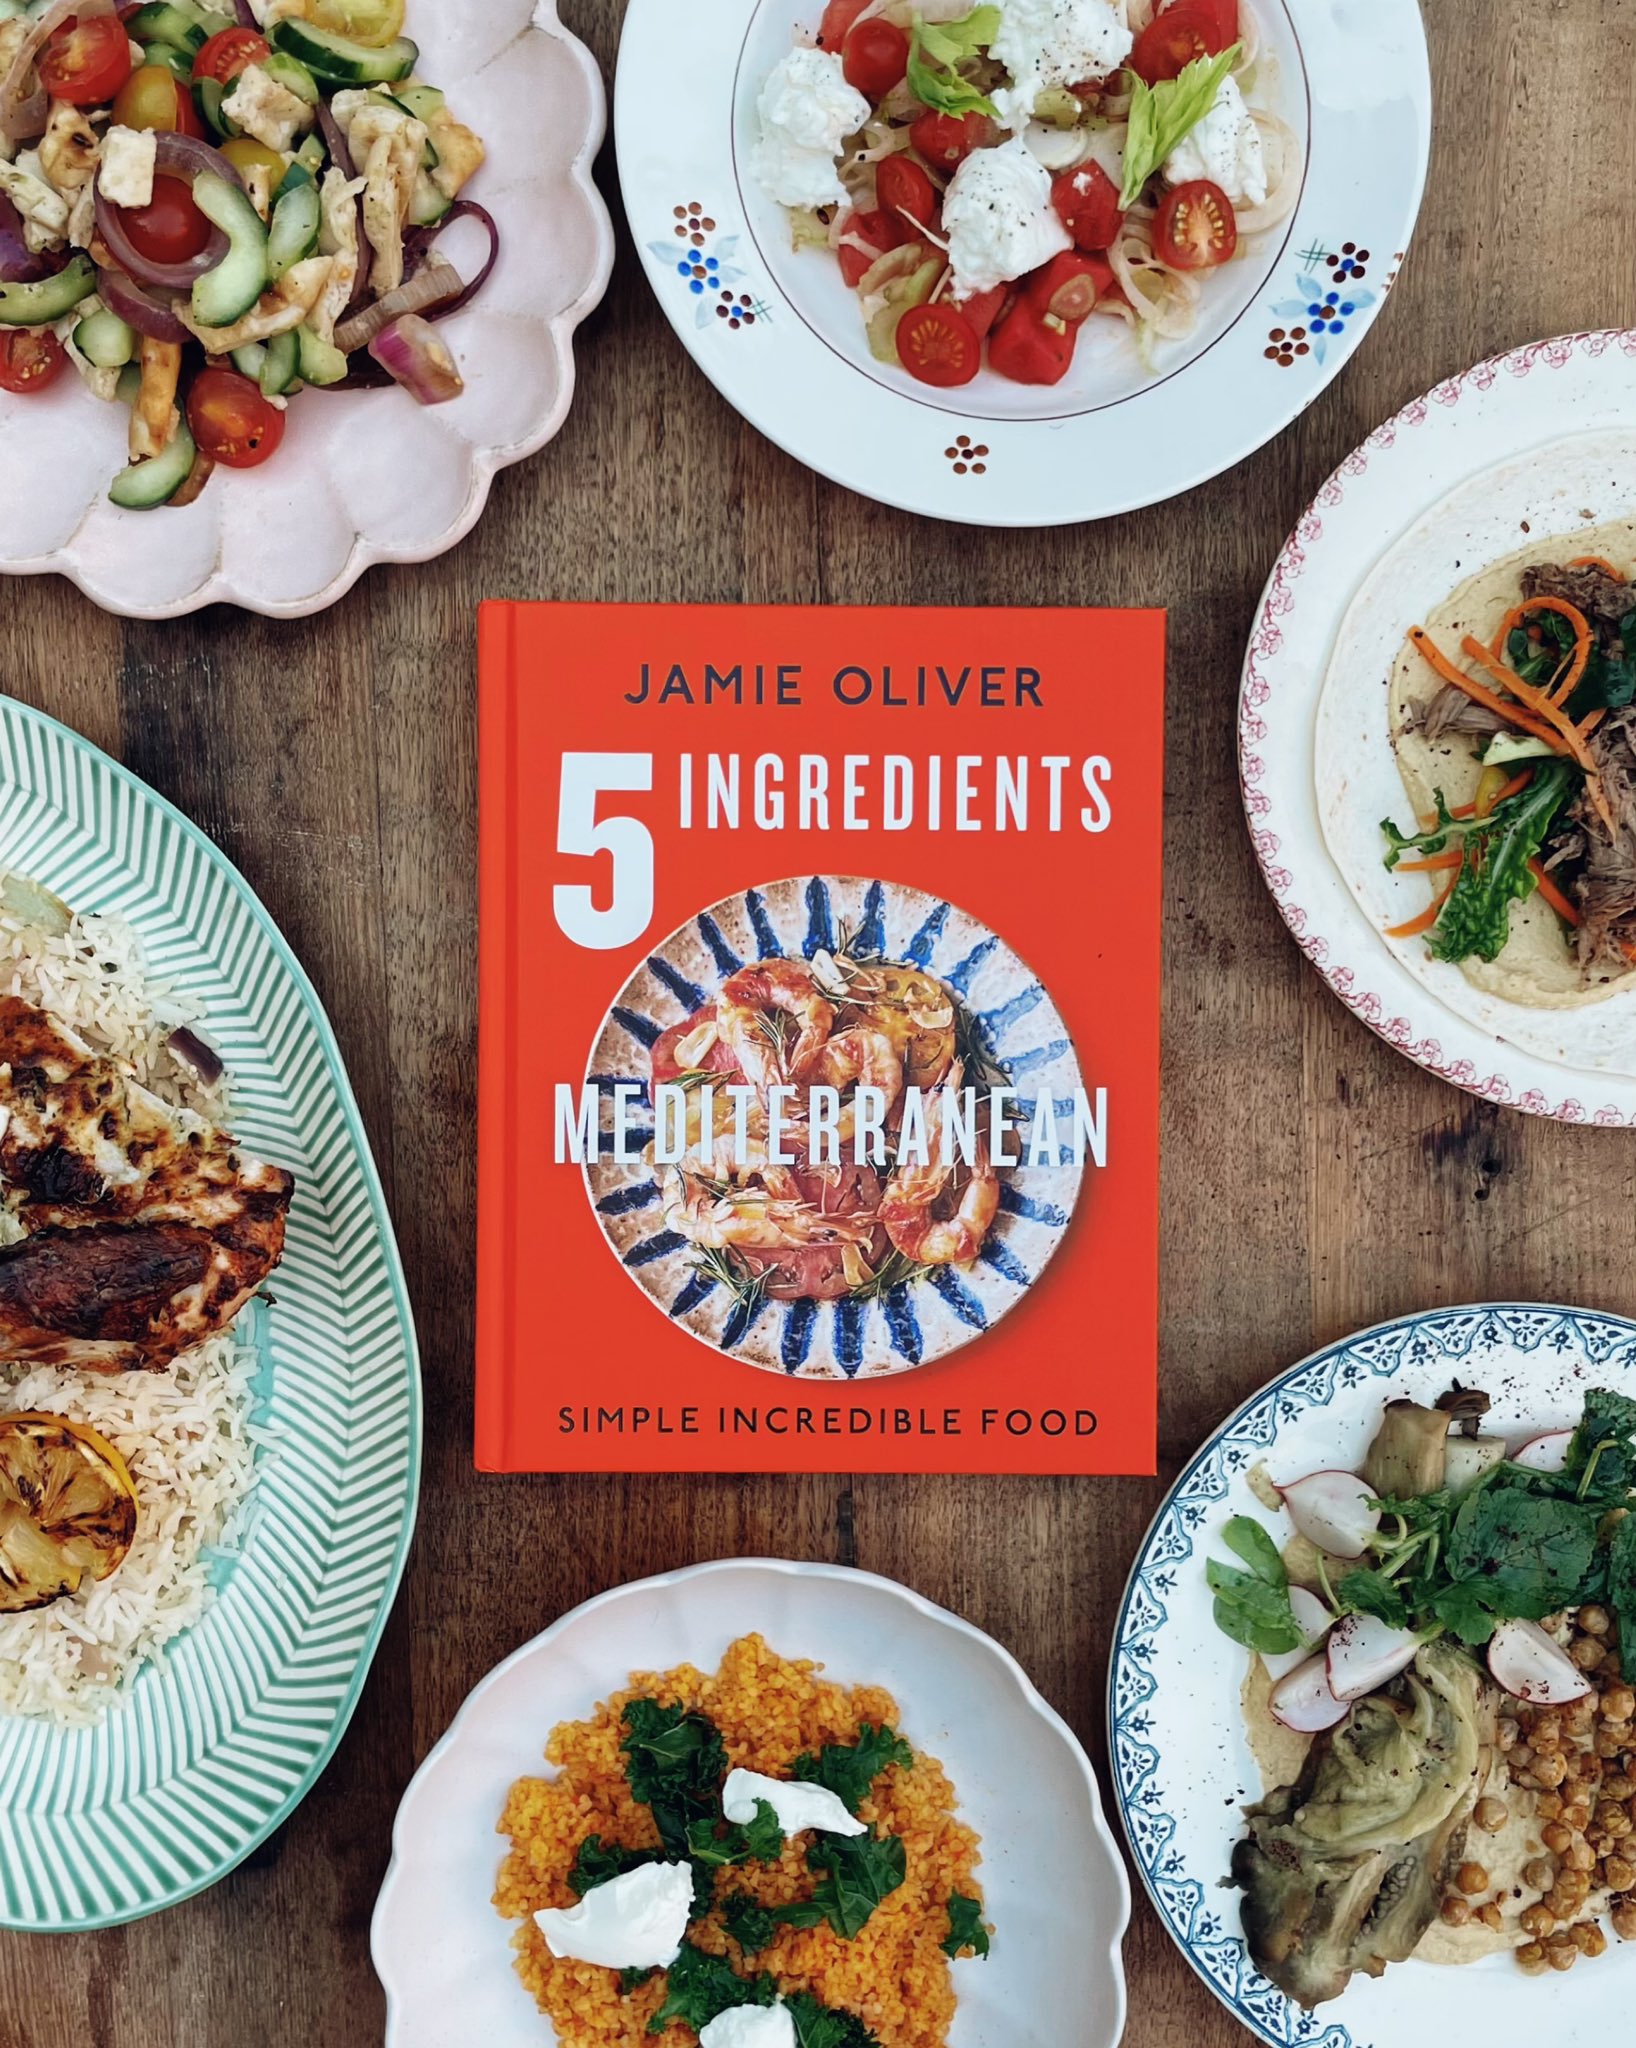 Jamie Oliver's 5 Ingredients Mediterranean – review